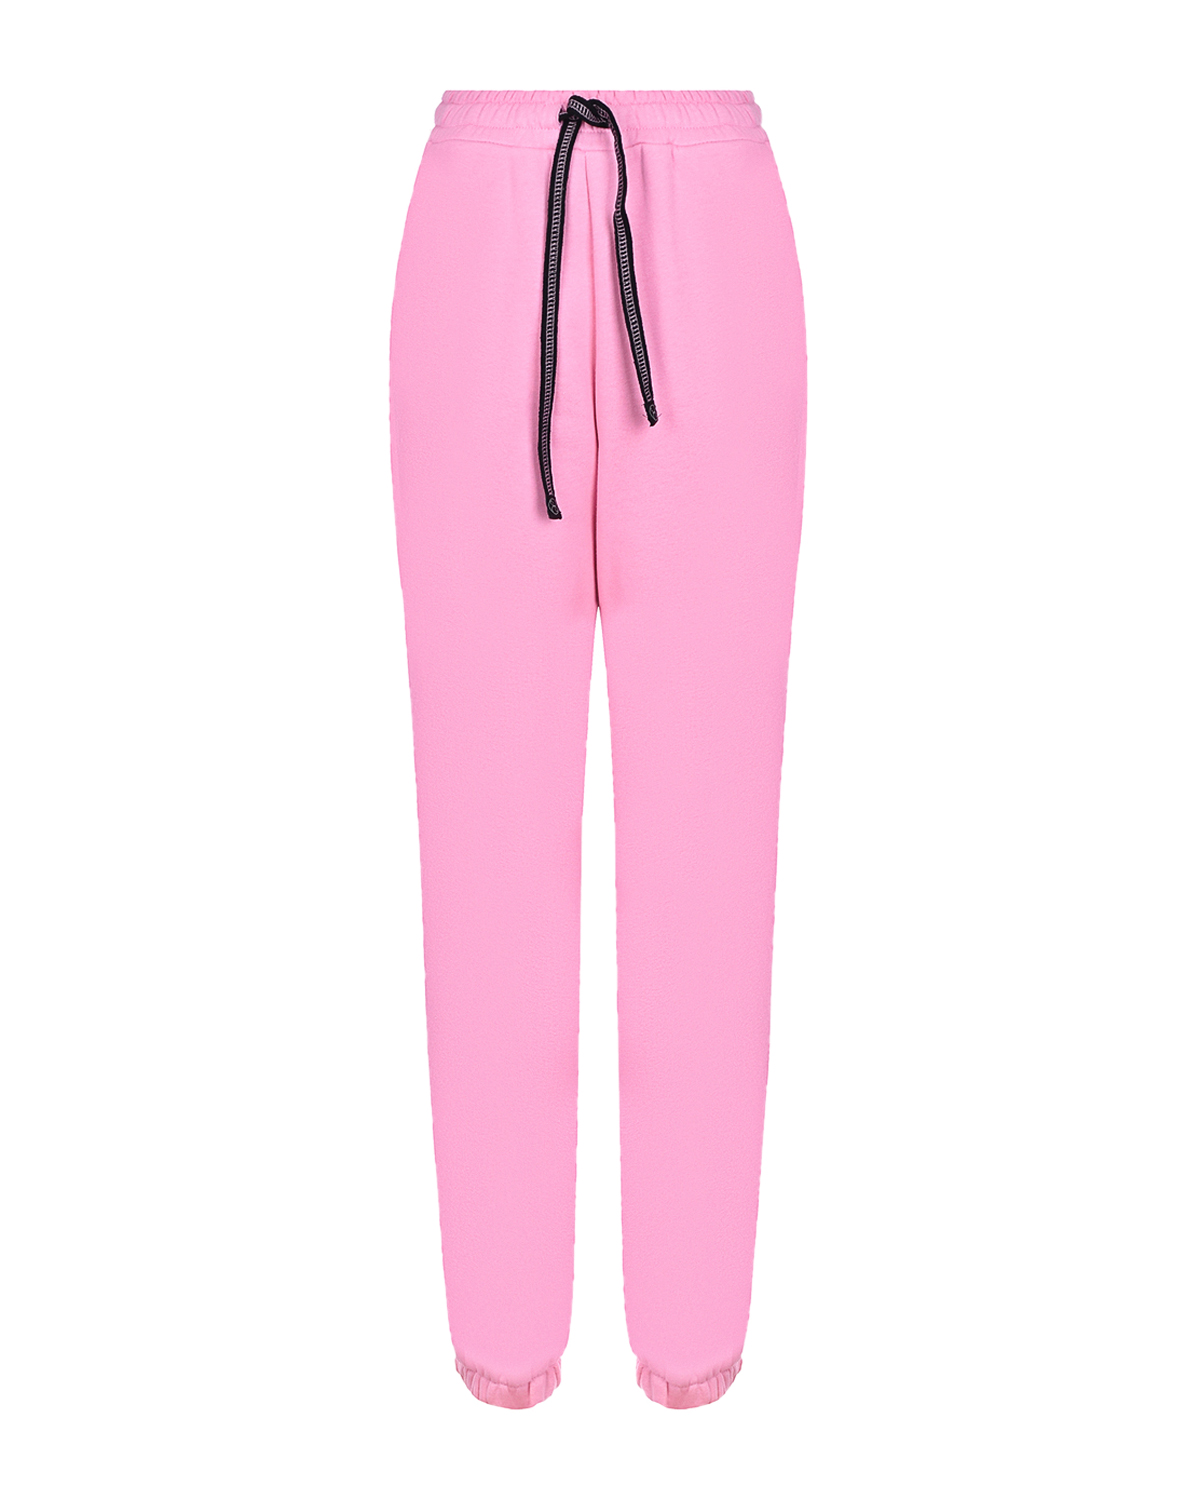 Розовые трикотажные брюки Dan Maralex, размер 42, цвет розовый - фото 1